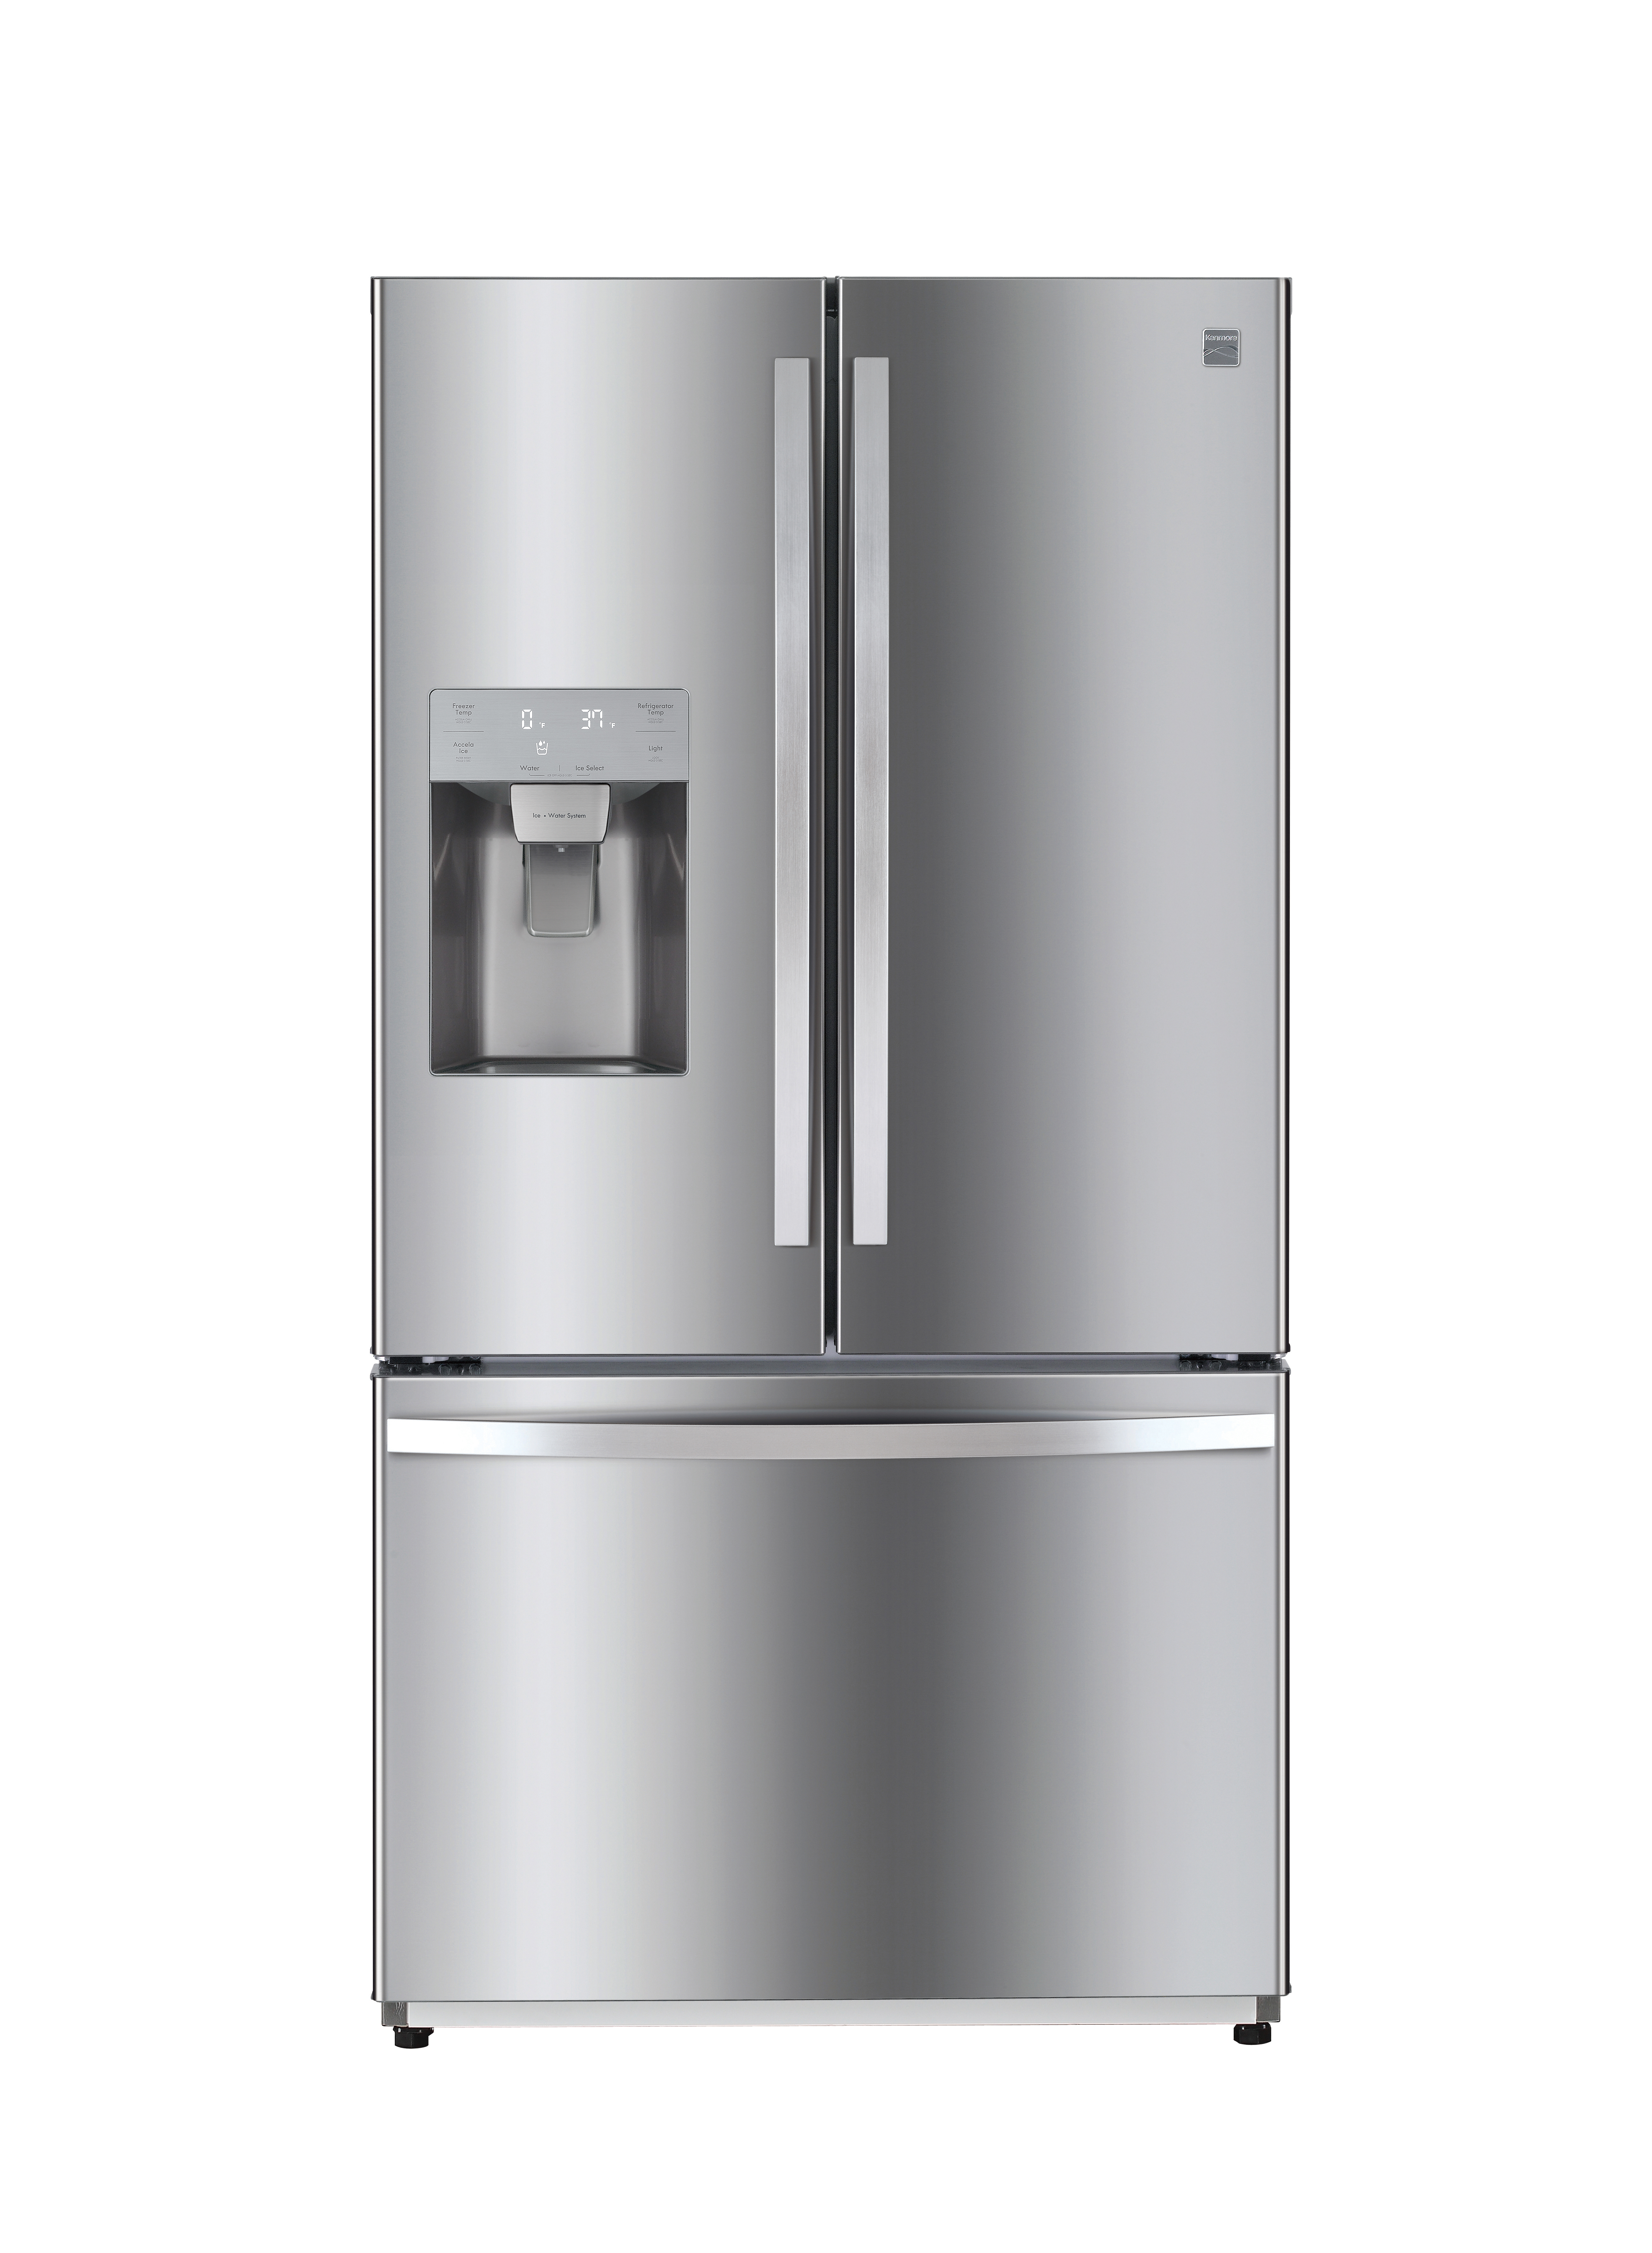 Kenmore 75035 25 5 Cu Ft French Door Refrigerator With Fingerprint